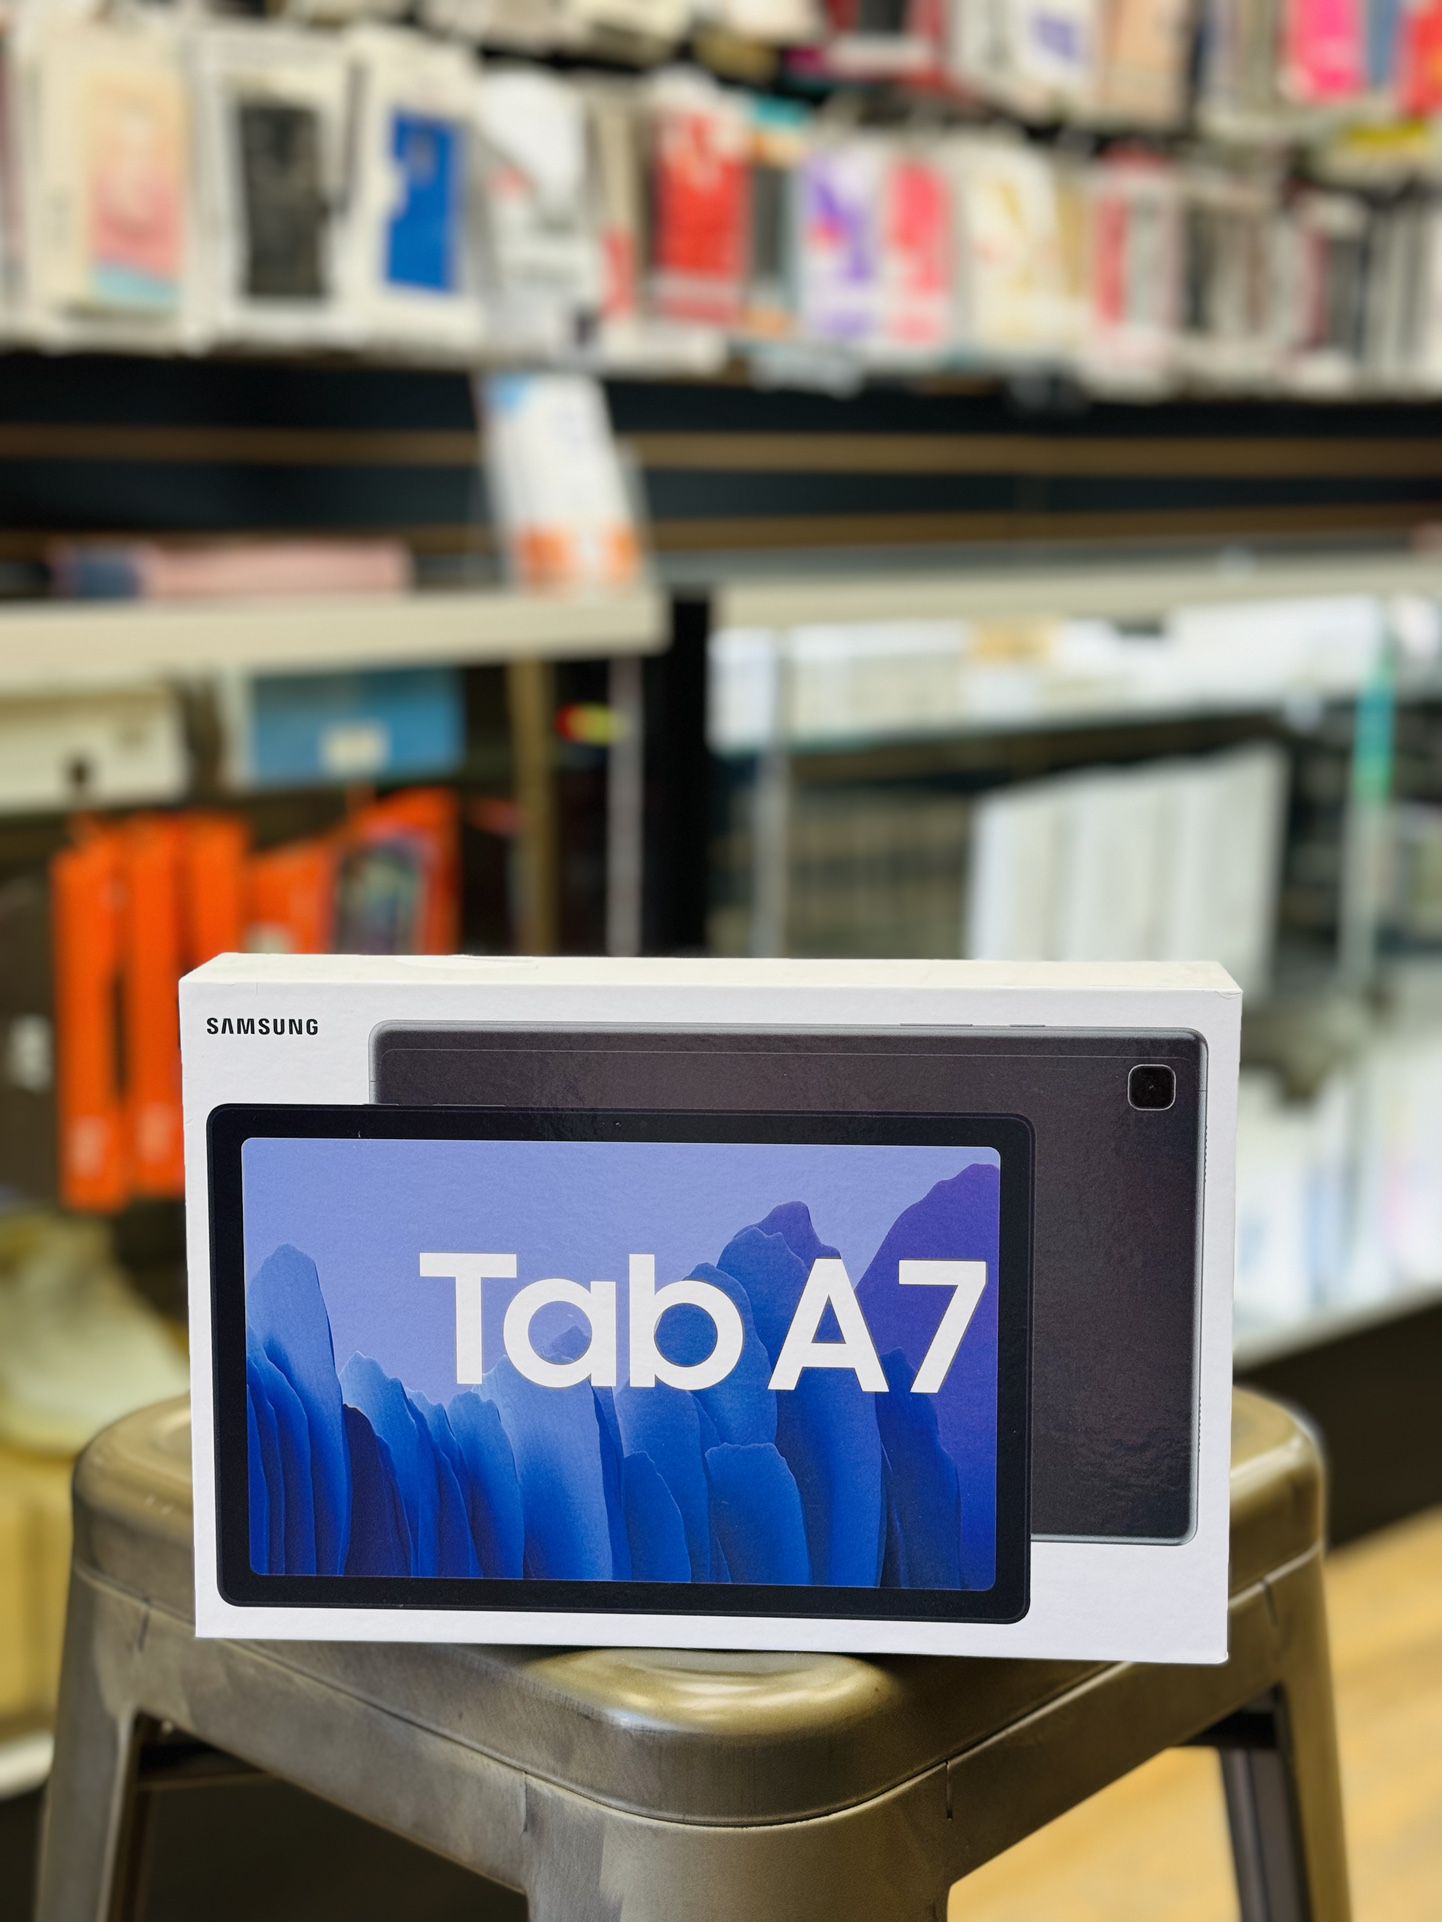 Samsung Tab A7 Available 